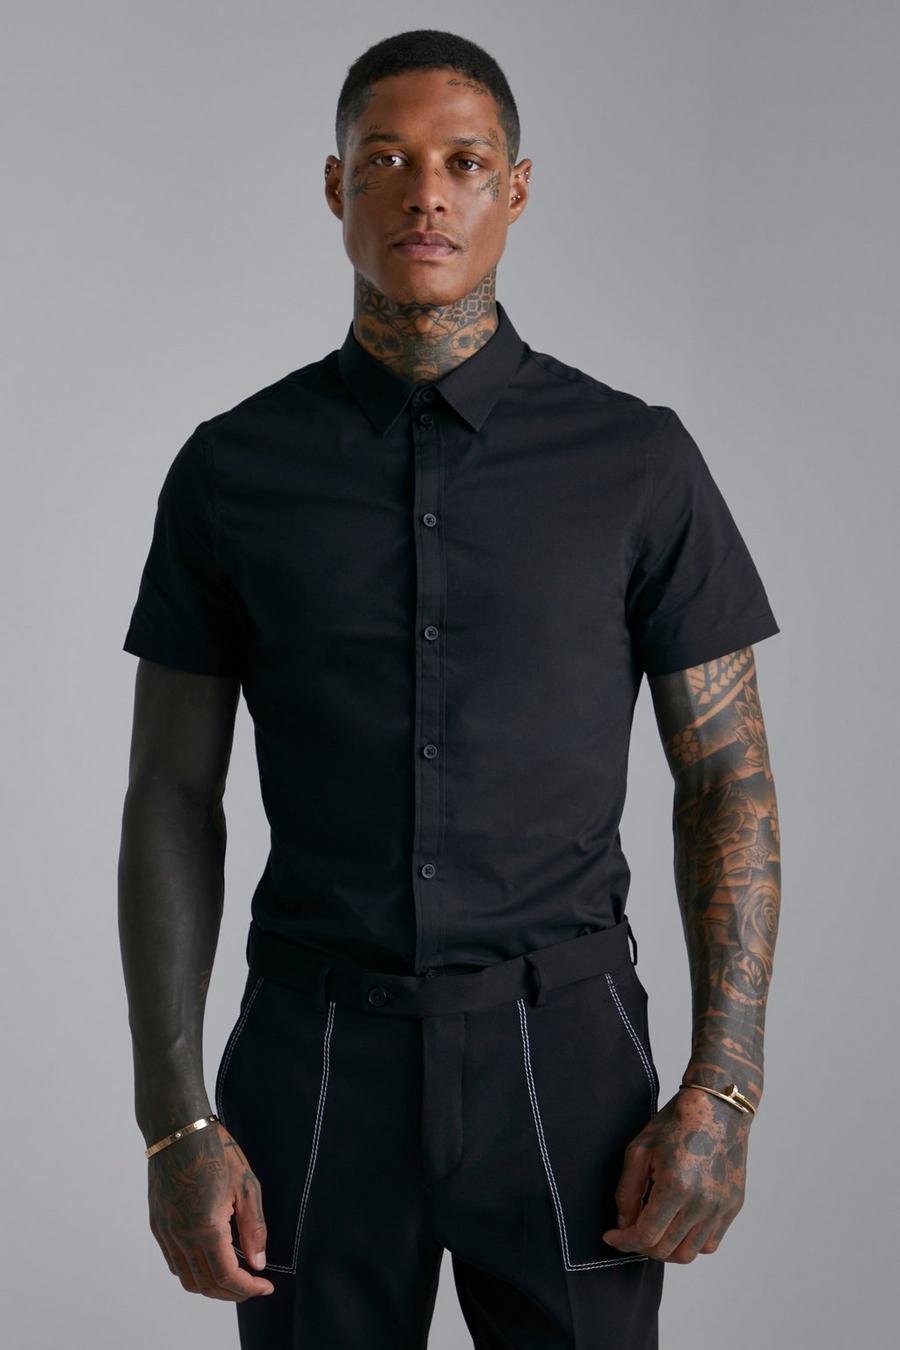 Black Short Sleeve Slim Shirt